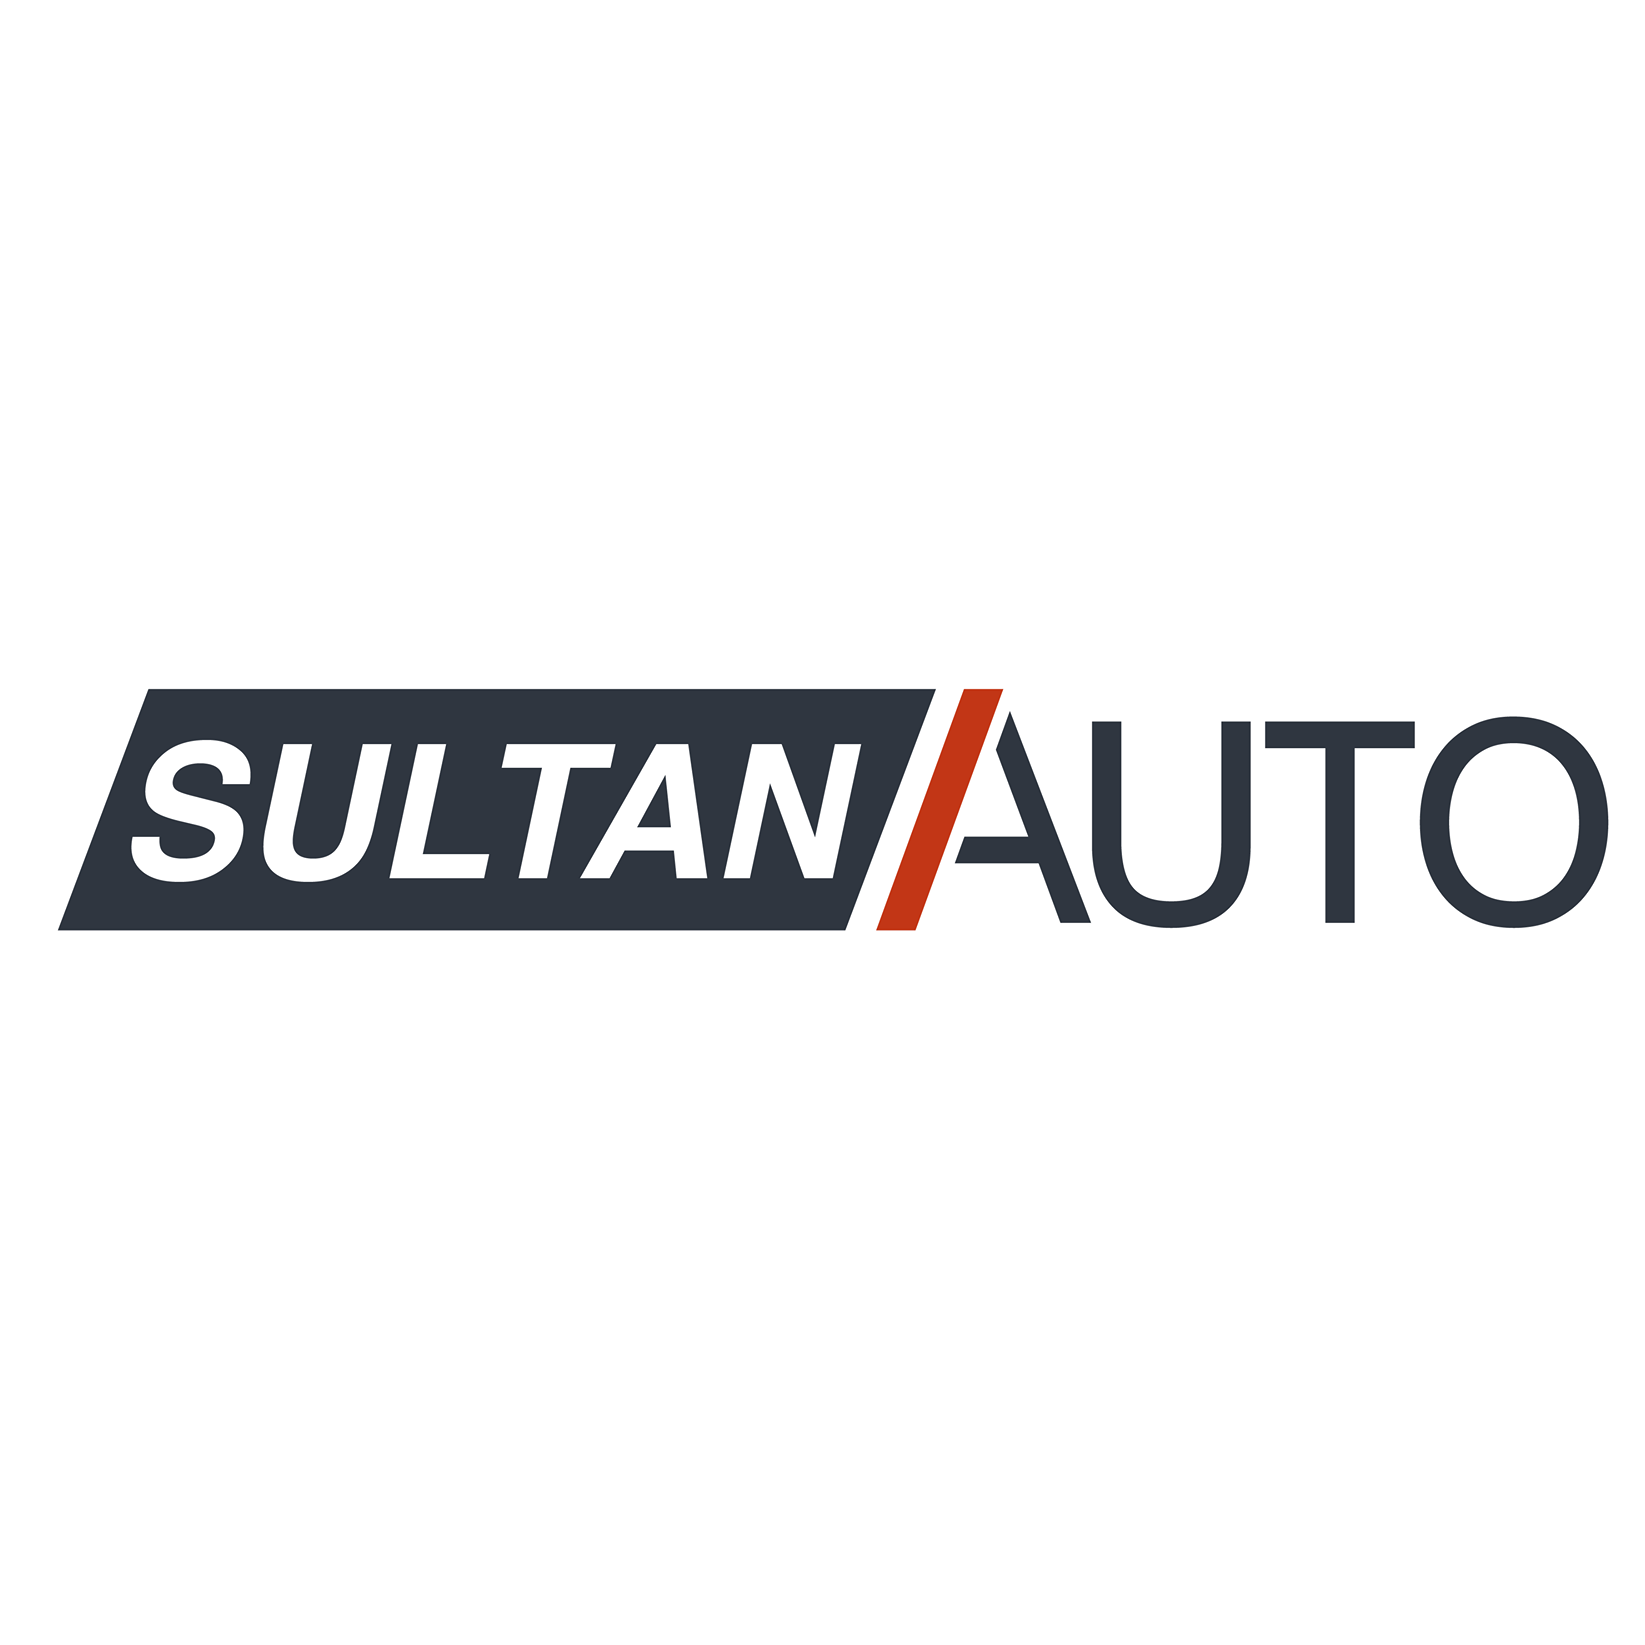 Sultan Auto